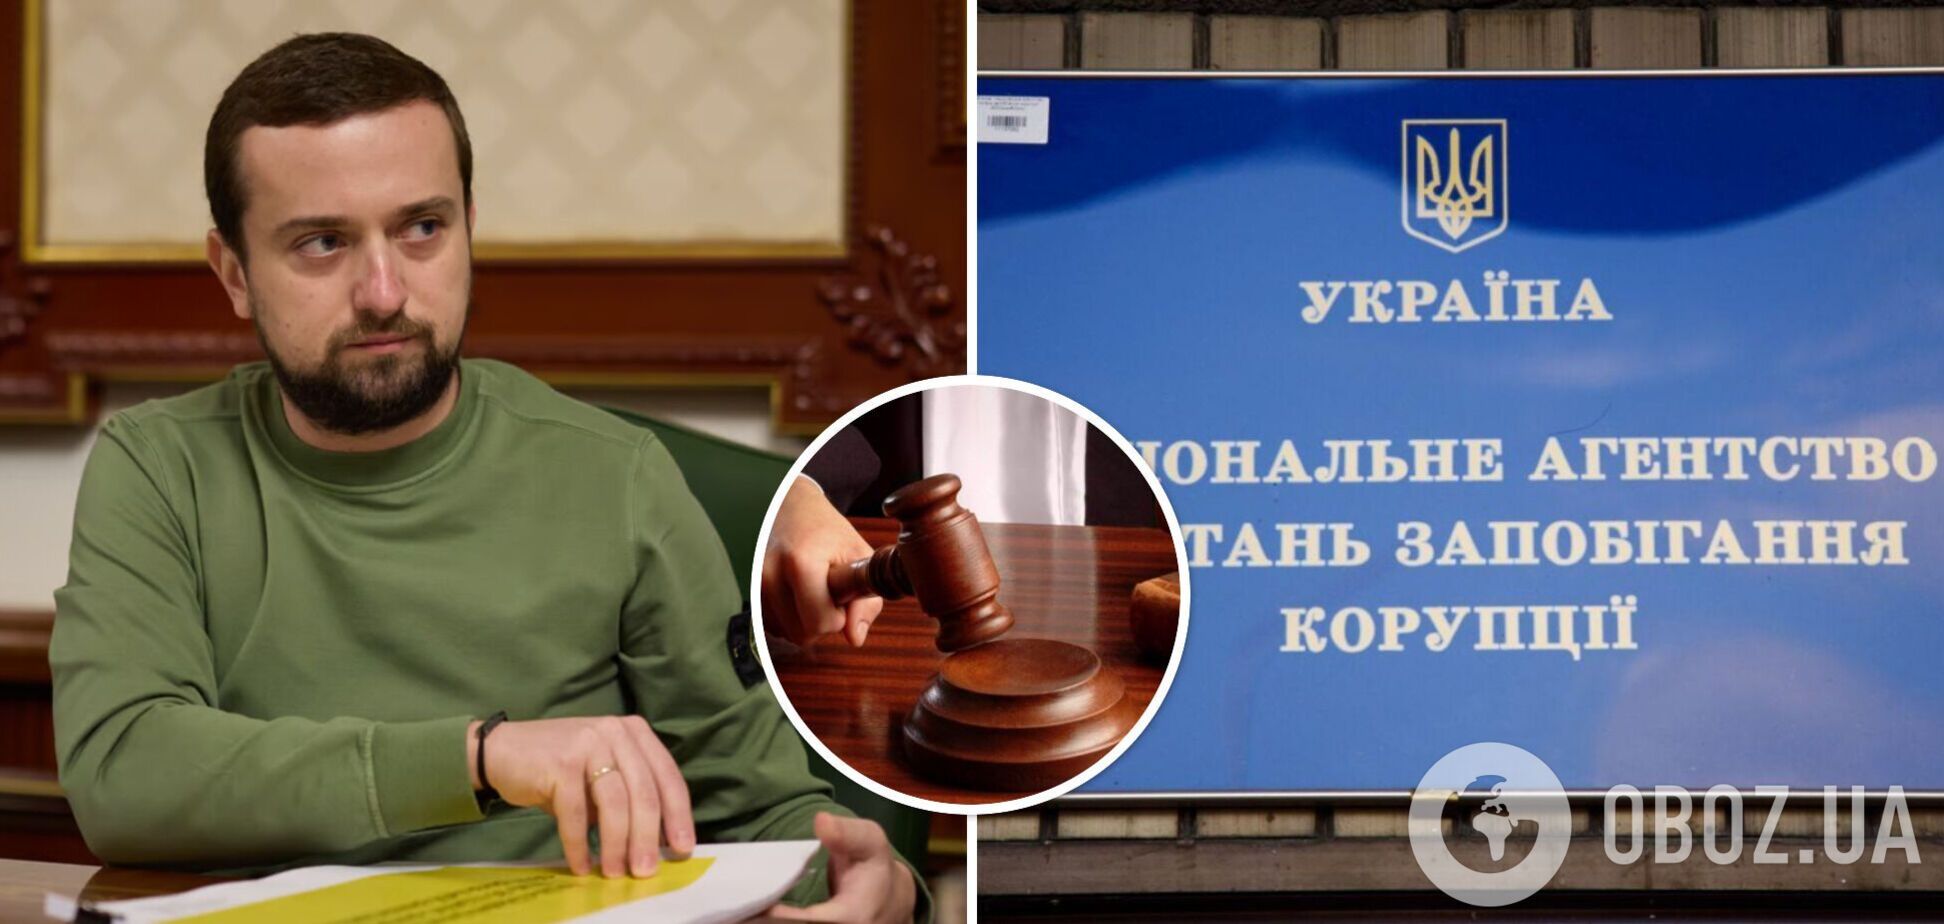 'Опровергнуты все претензии по мне': Кирилл Тимошенко выиграл суд у НАПК и намекнул на выход из тишины. Фото